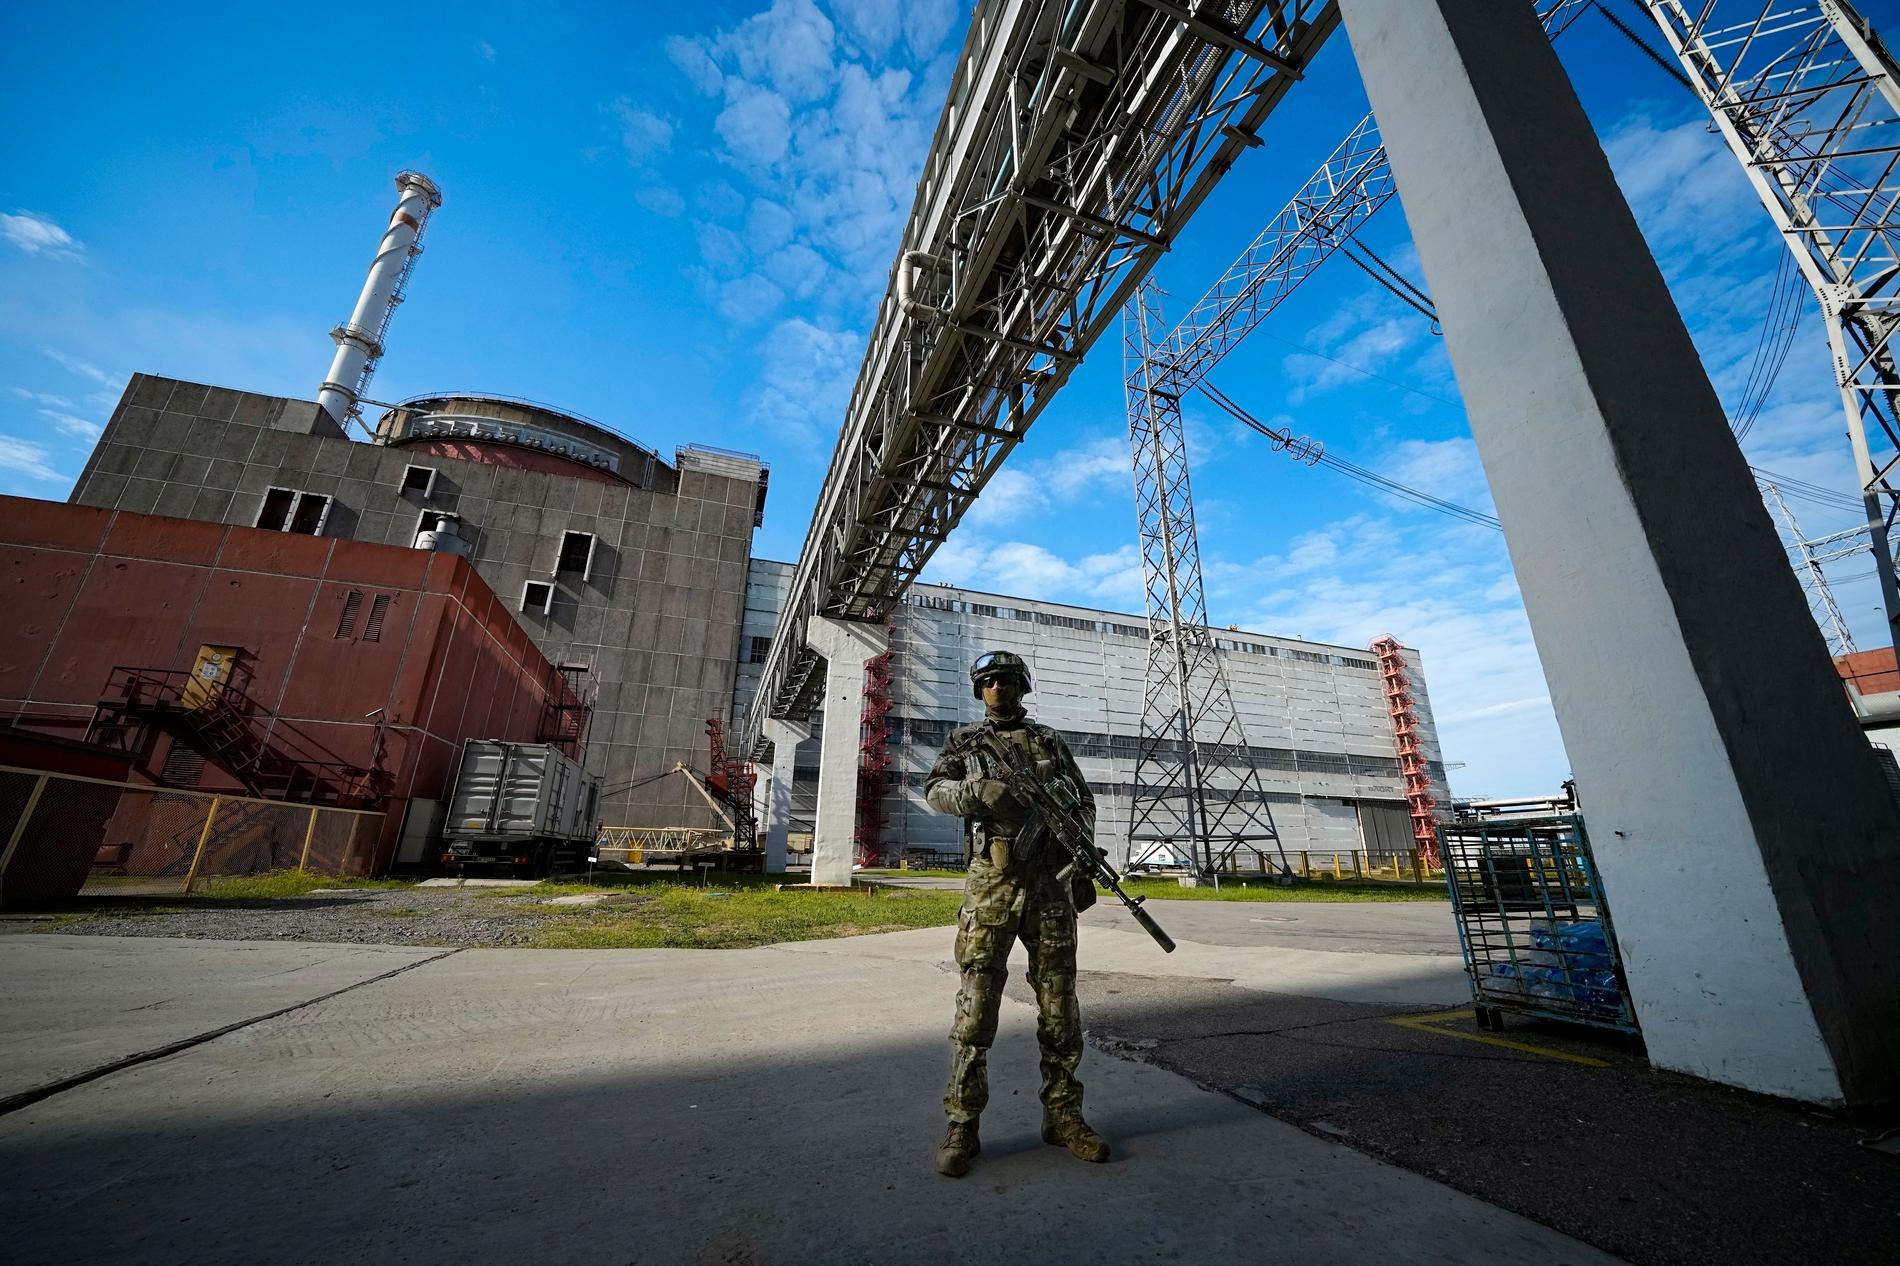 Battaglie intorno a un reattore nucleare: – Non progettato per resistere alle ostilità – VG